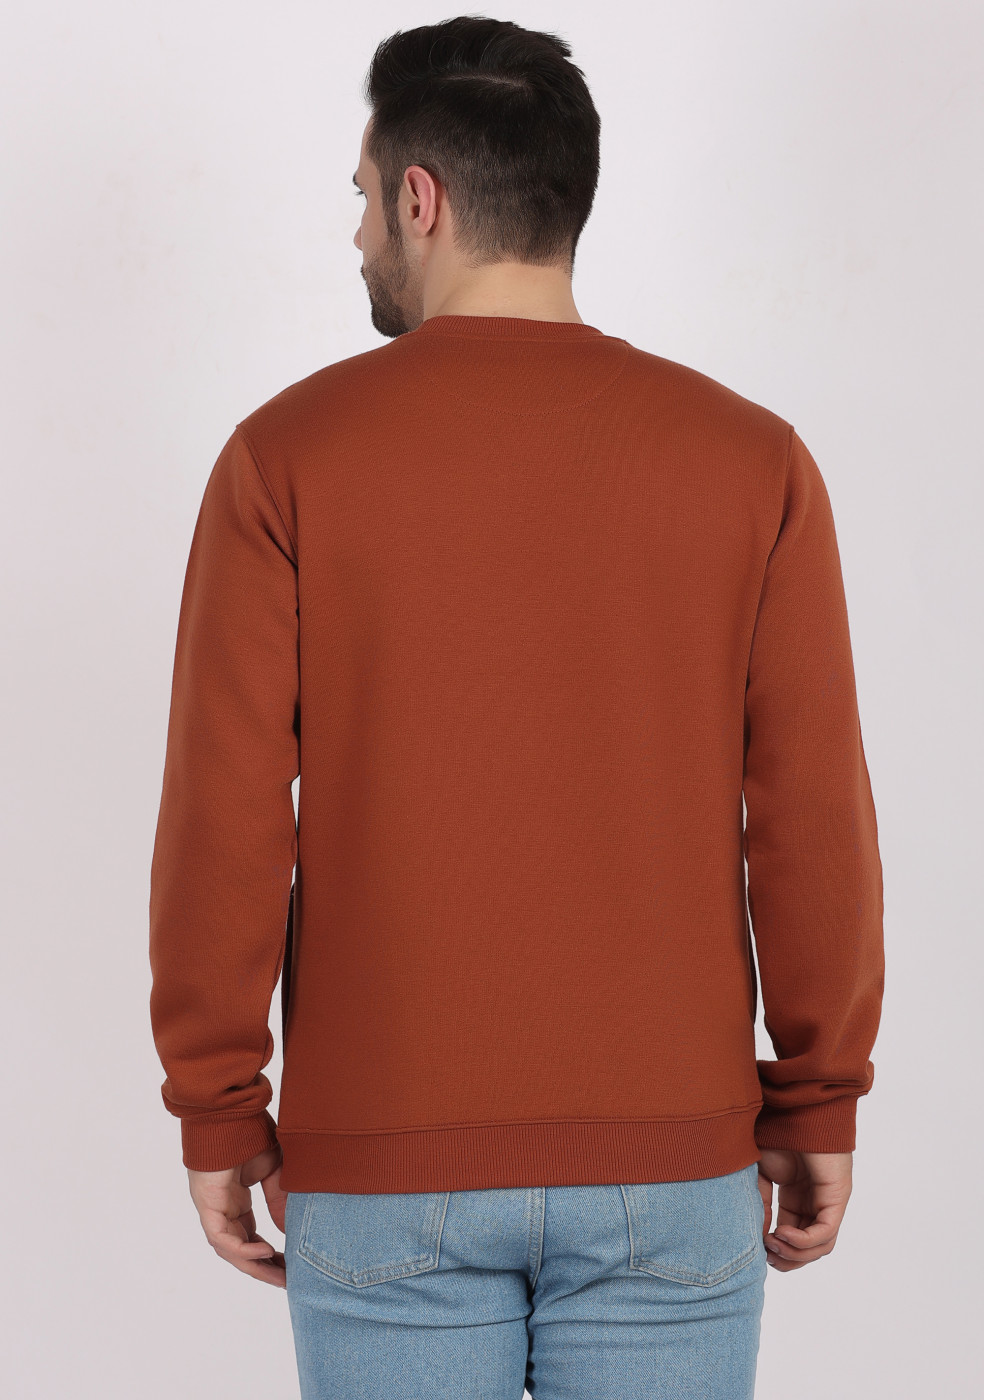 HUKH Rust Color Sweatshirt For Men